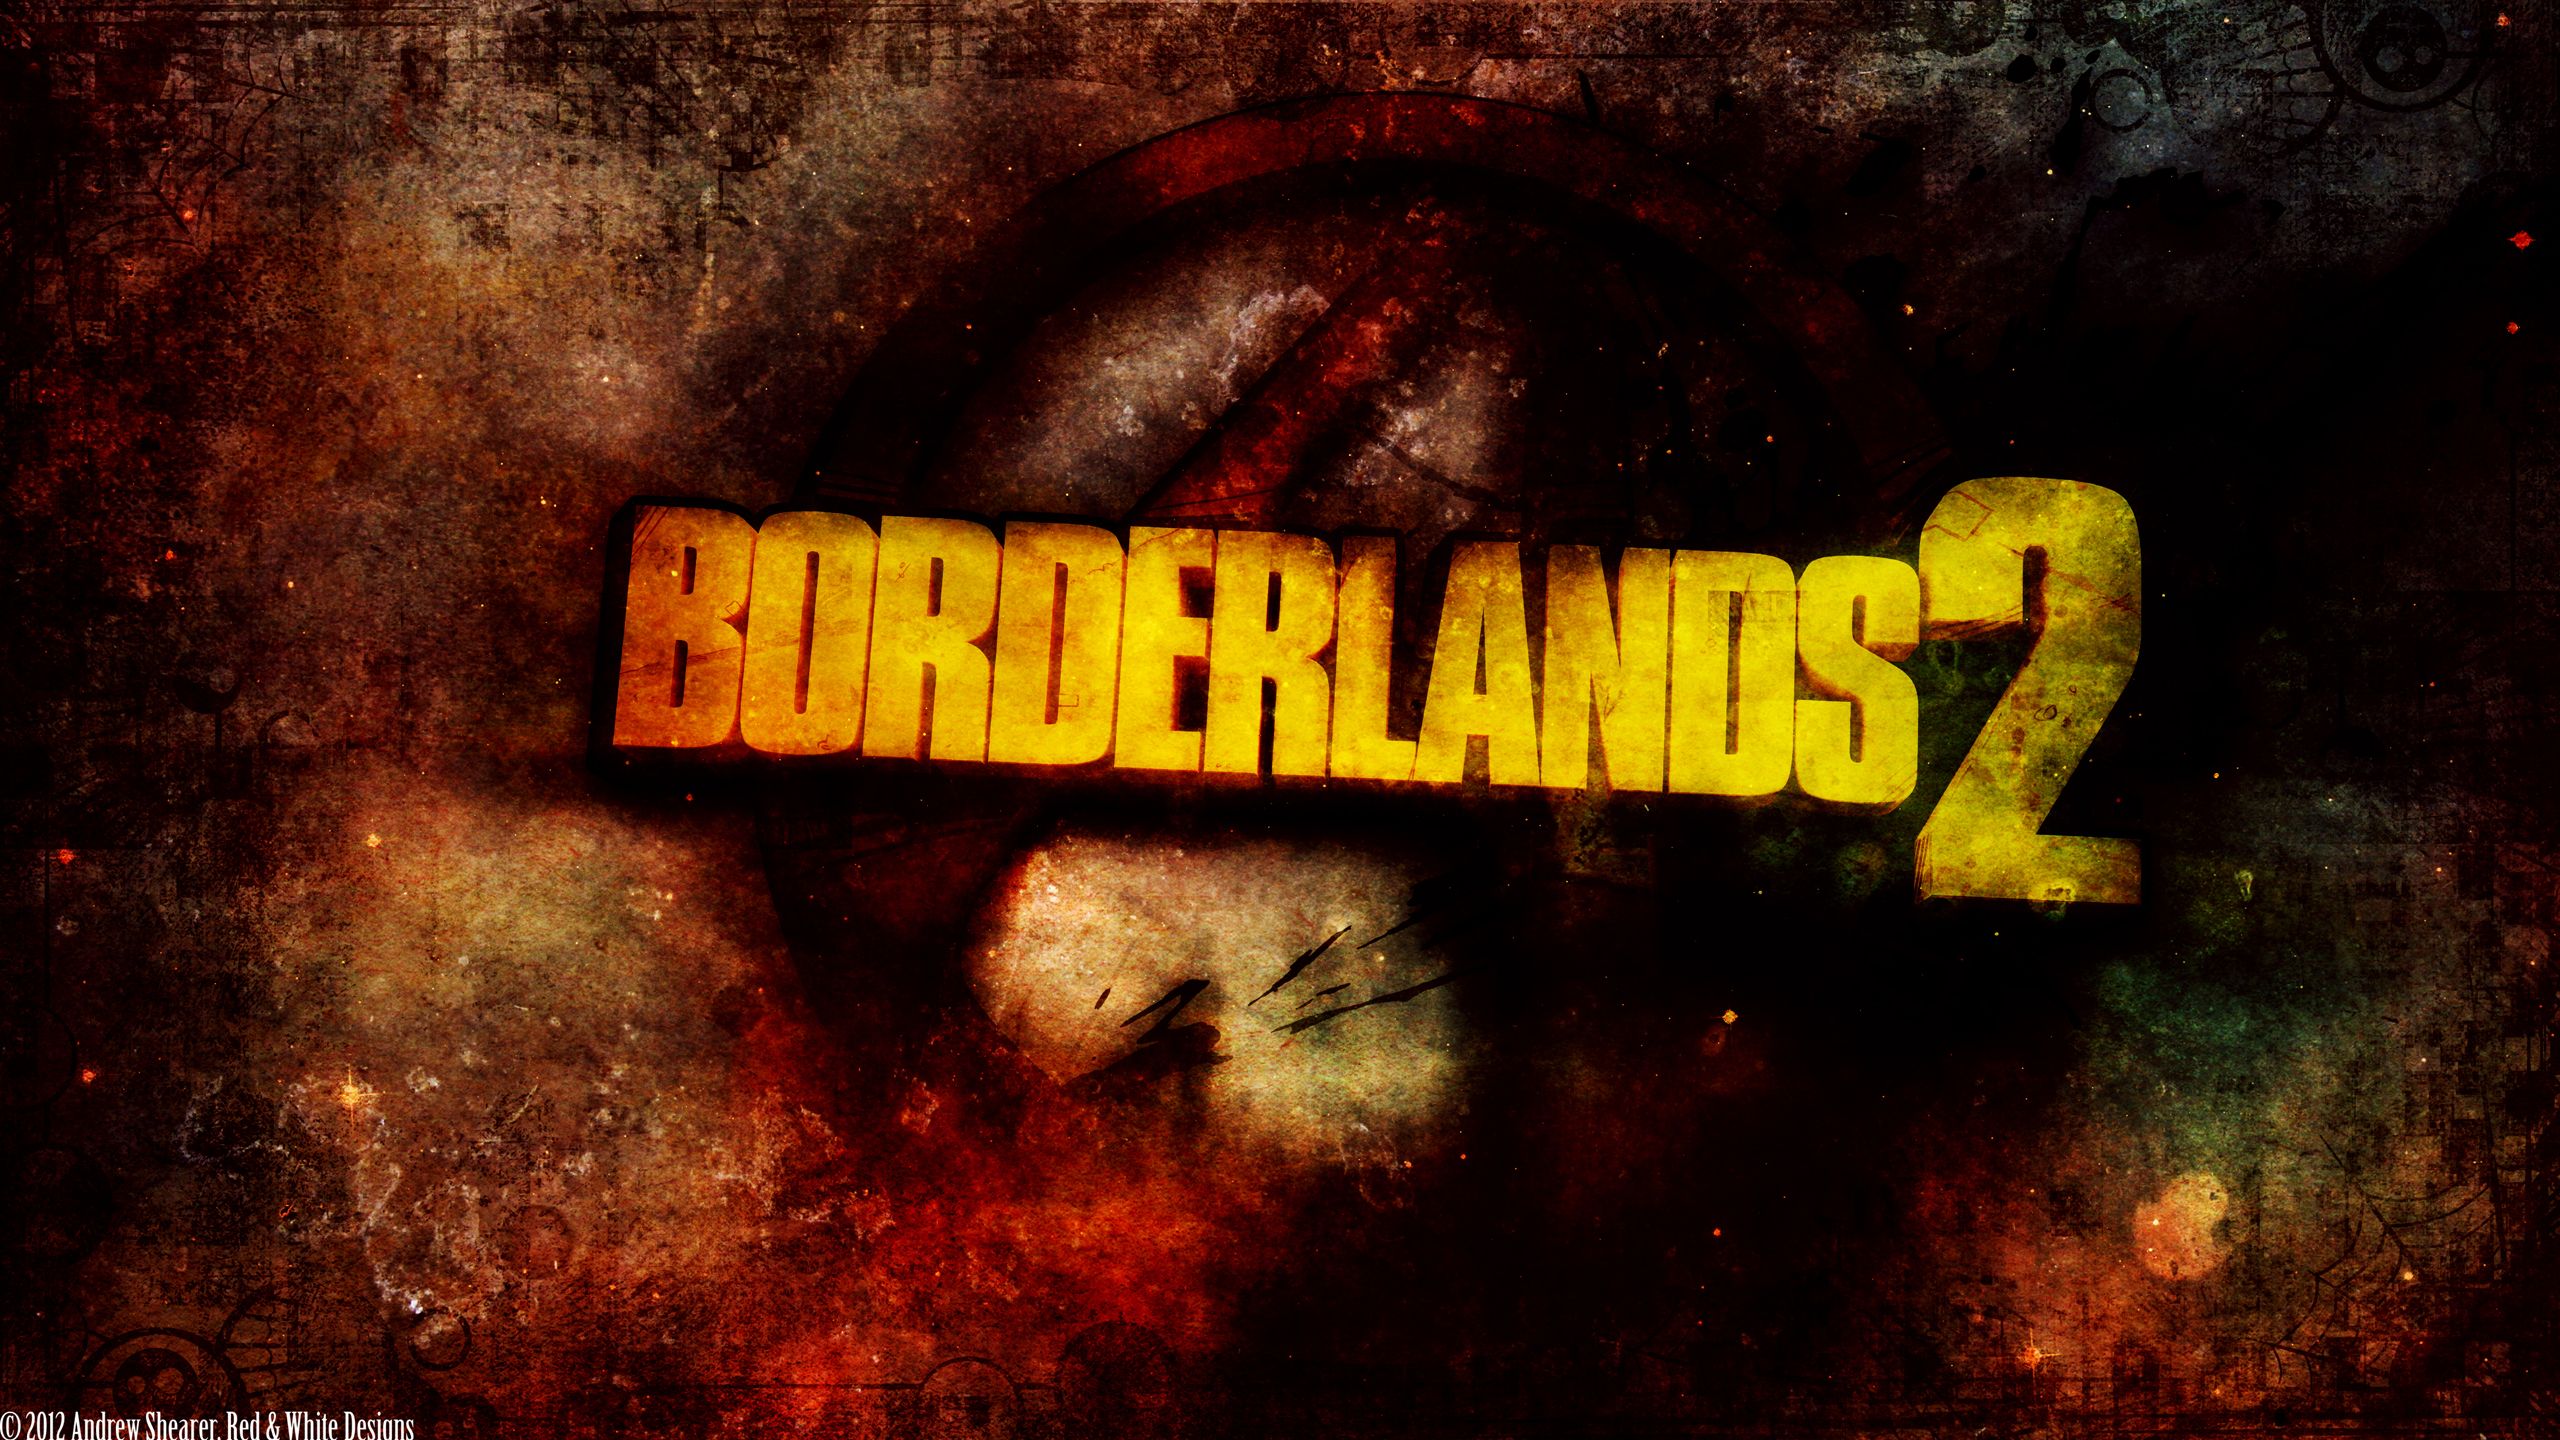 Download mobile wallpaper Borderlands 2, Borderlands, Video Game for free.